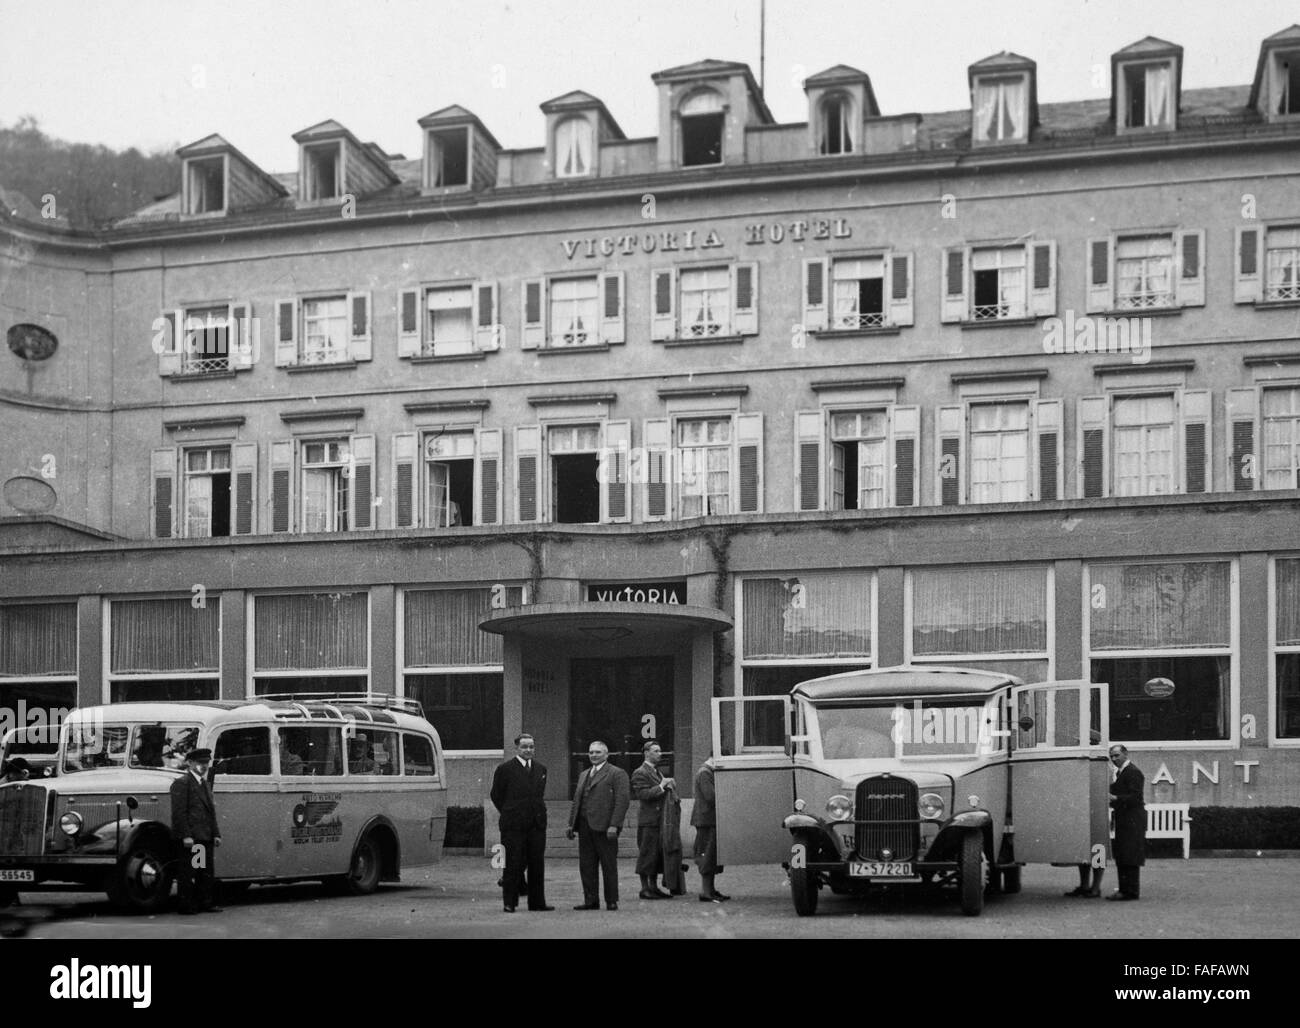 Reisebusse vor dem Hotel Victoria in Heidelberg, Deutschland 1930er Jahre. Coaches in front of Victoria hotel at Heidelberg, Germany 1930s. Stock Photo